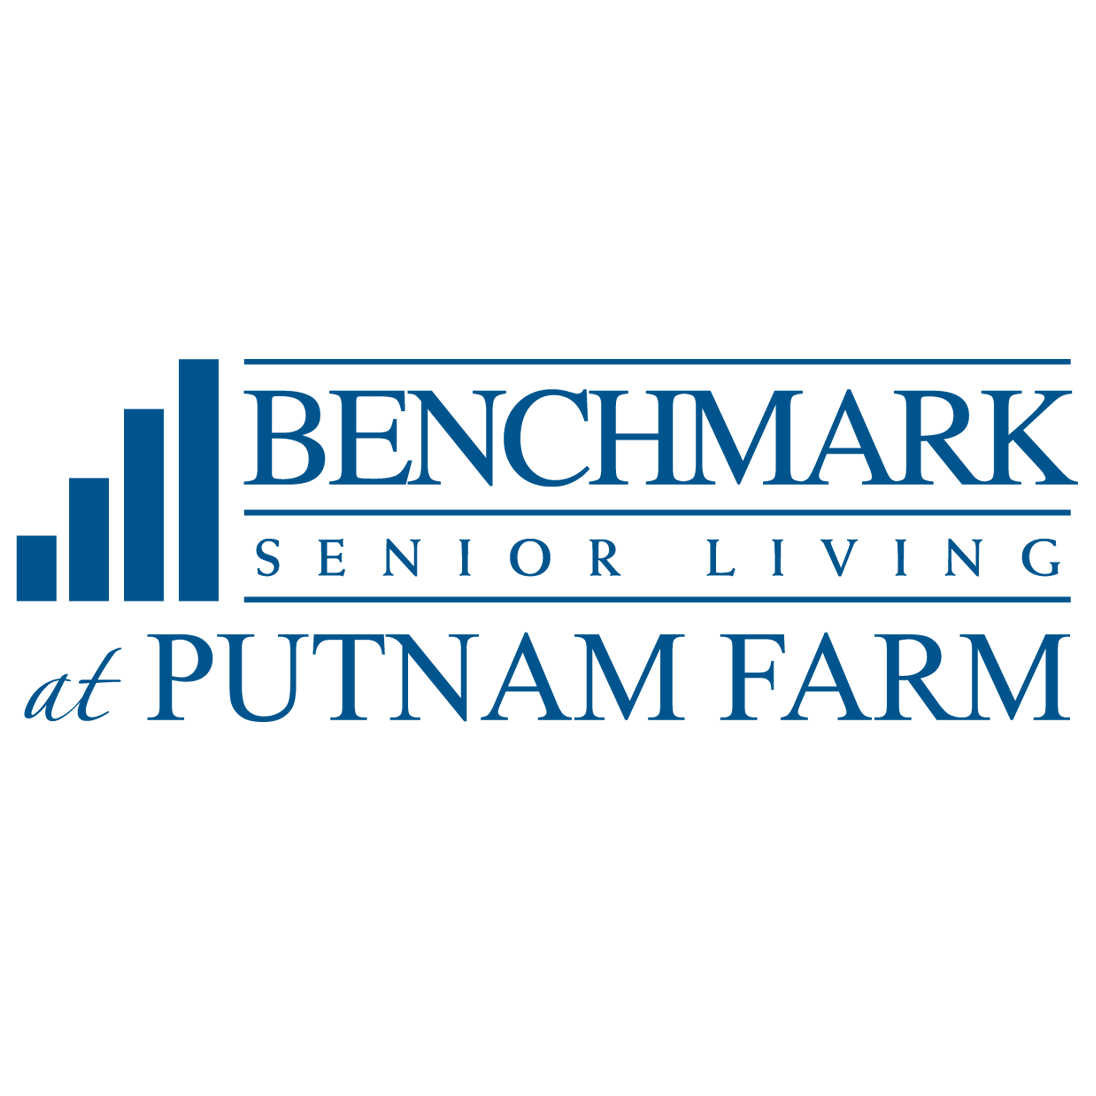 Benchmark Senior Living at Putnam Farm - Danvers, MA 01923 - (978)774-5959 | ShowMeLocal.com